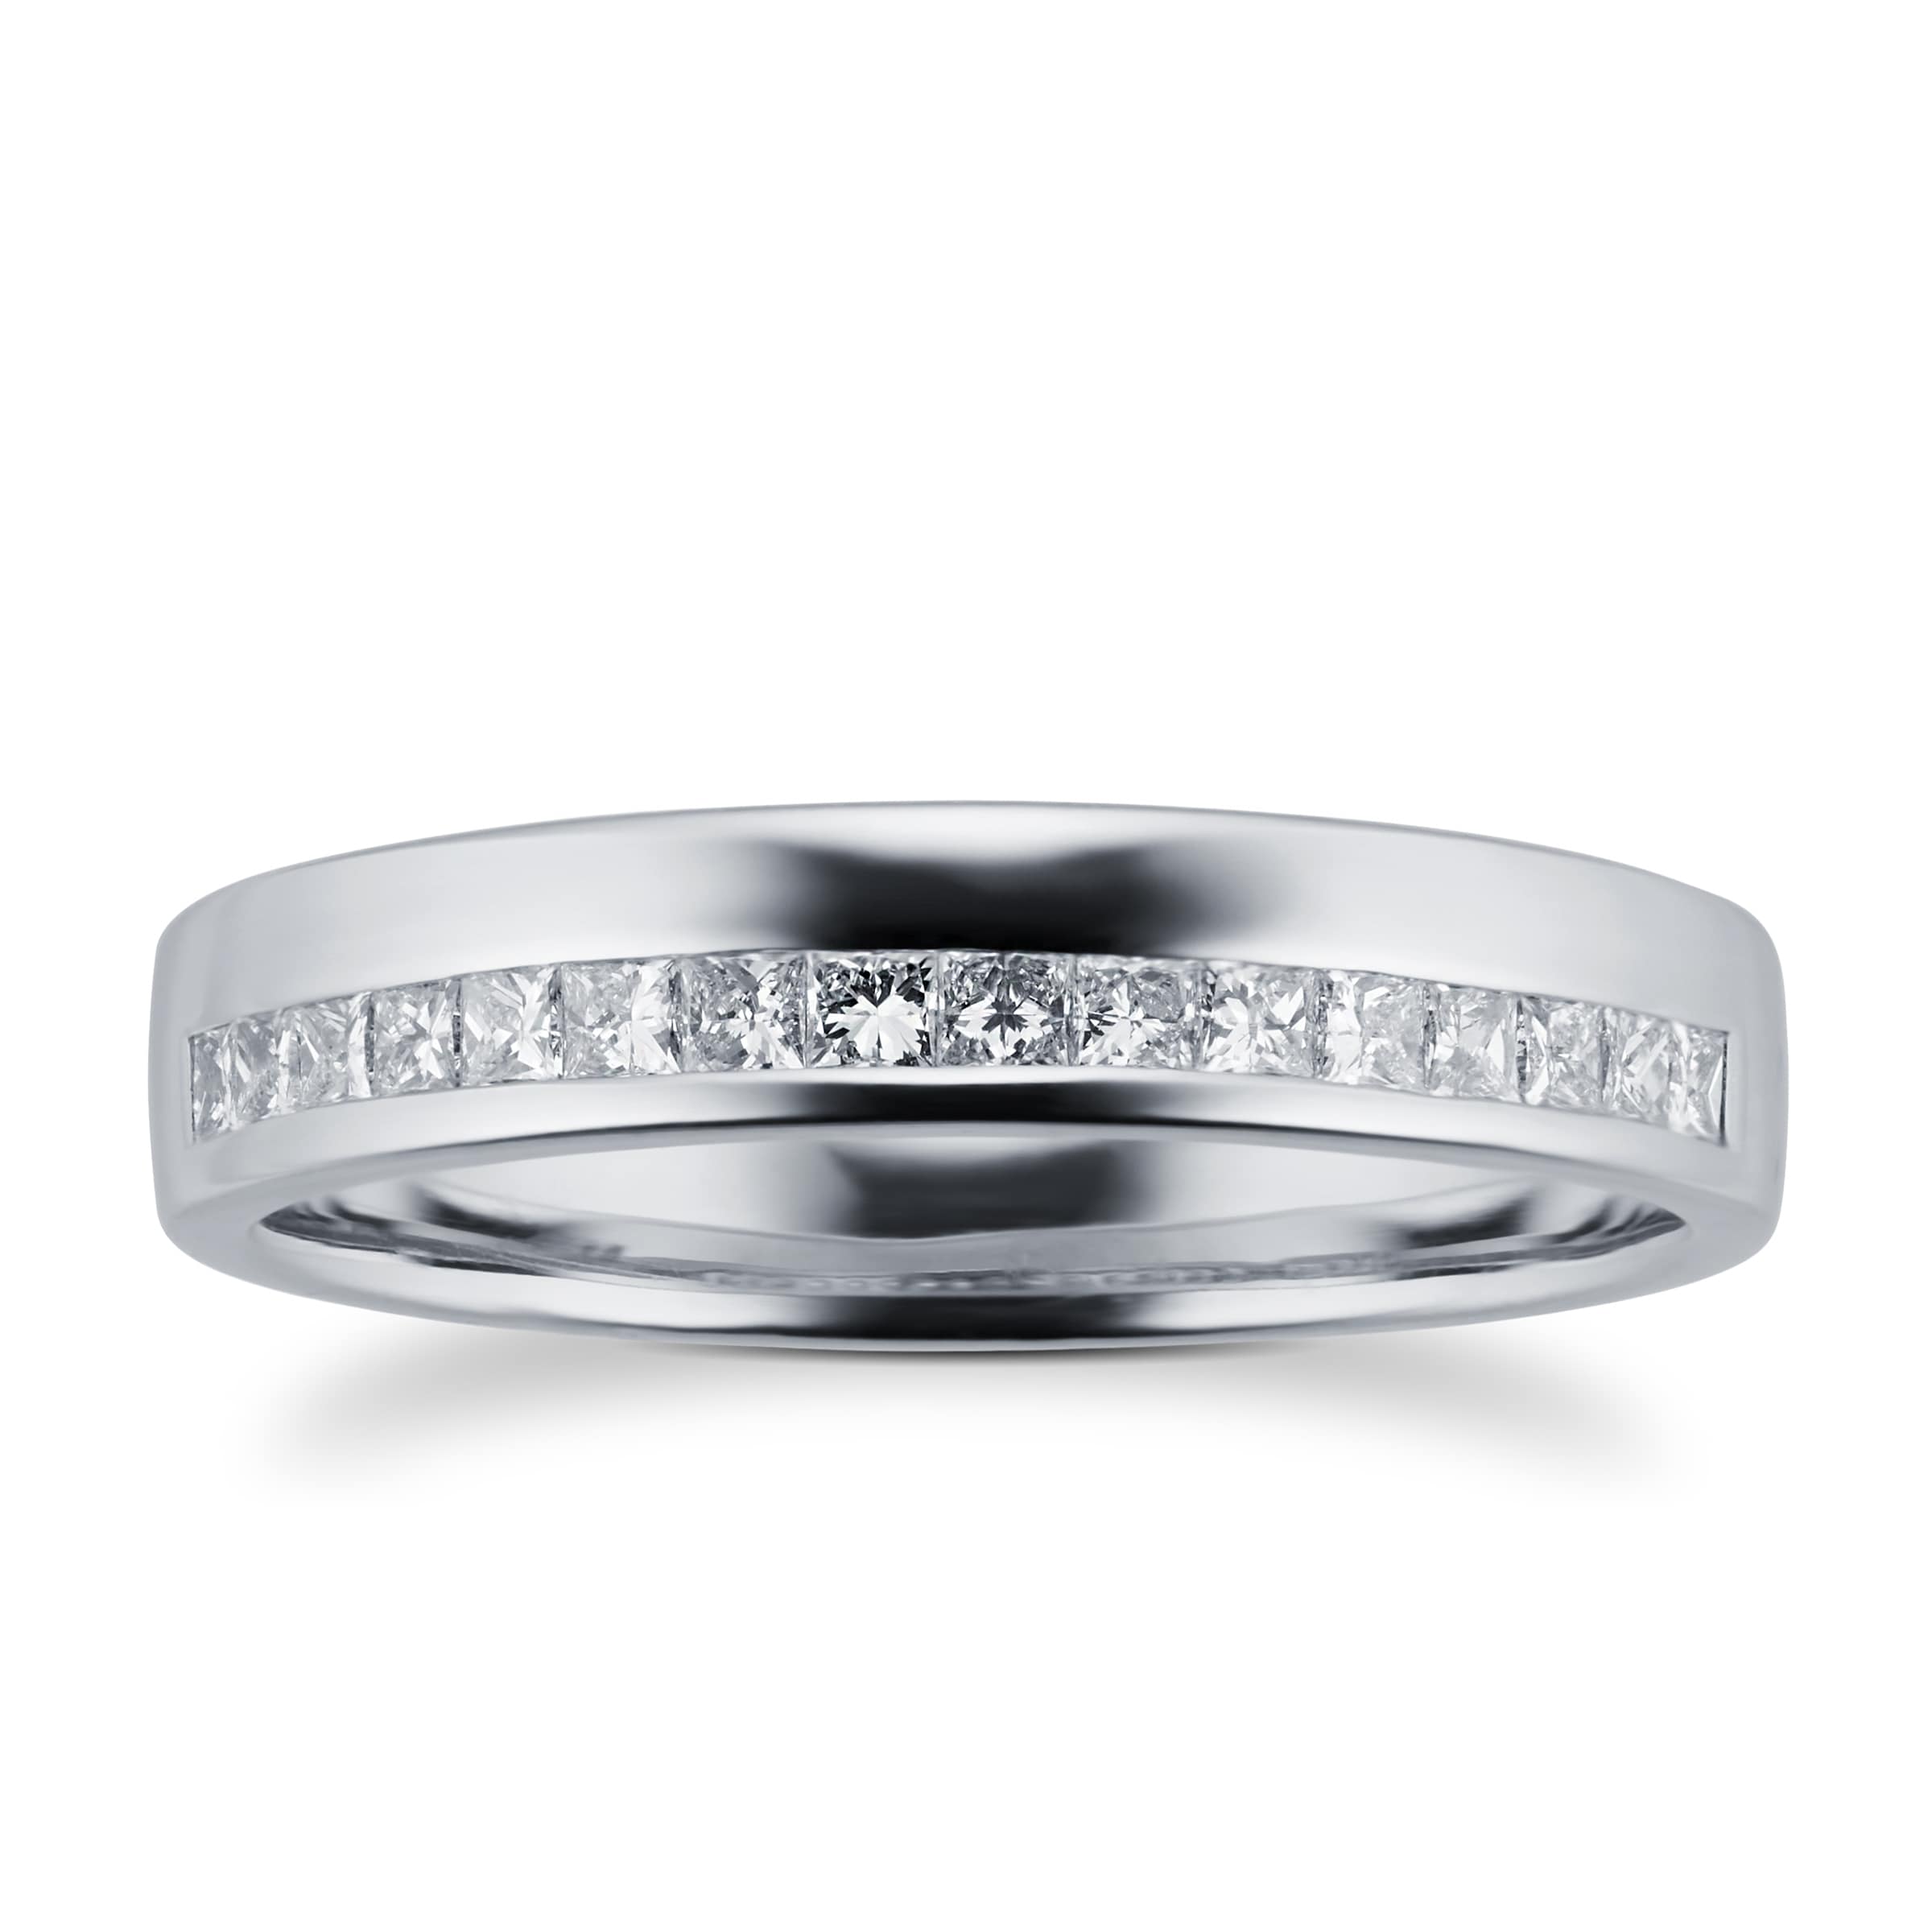 Princess Cut 0.33 Total Carat Weight Diamond Ladies Wedding Ring Set In Platinum - Ring Size K